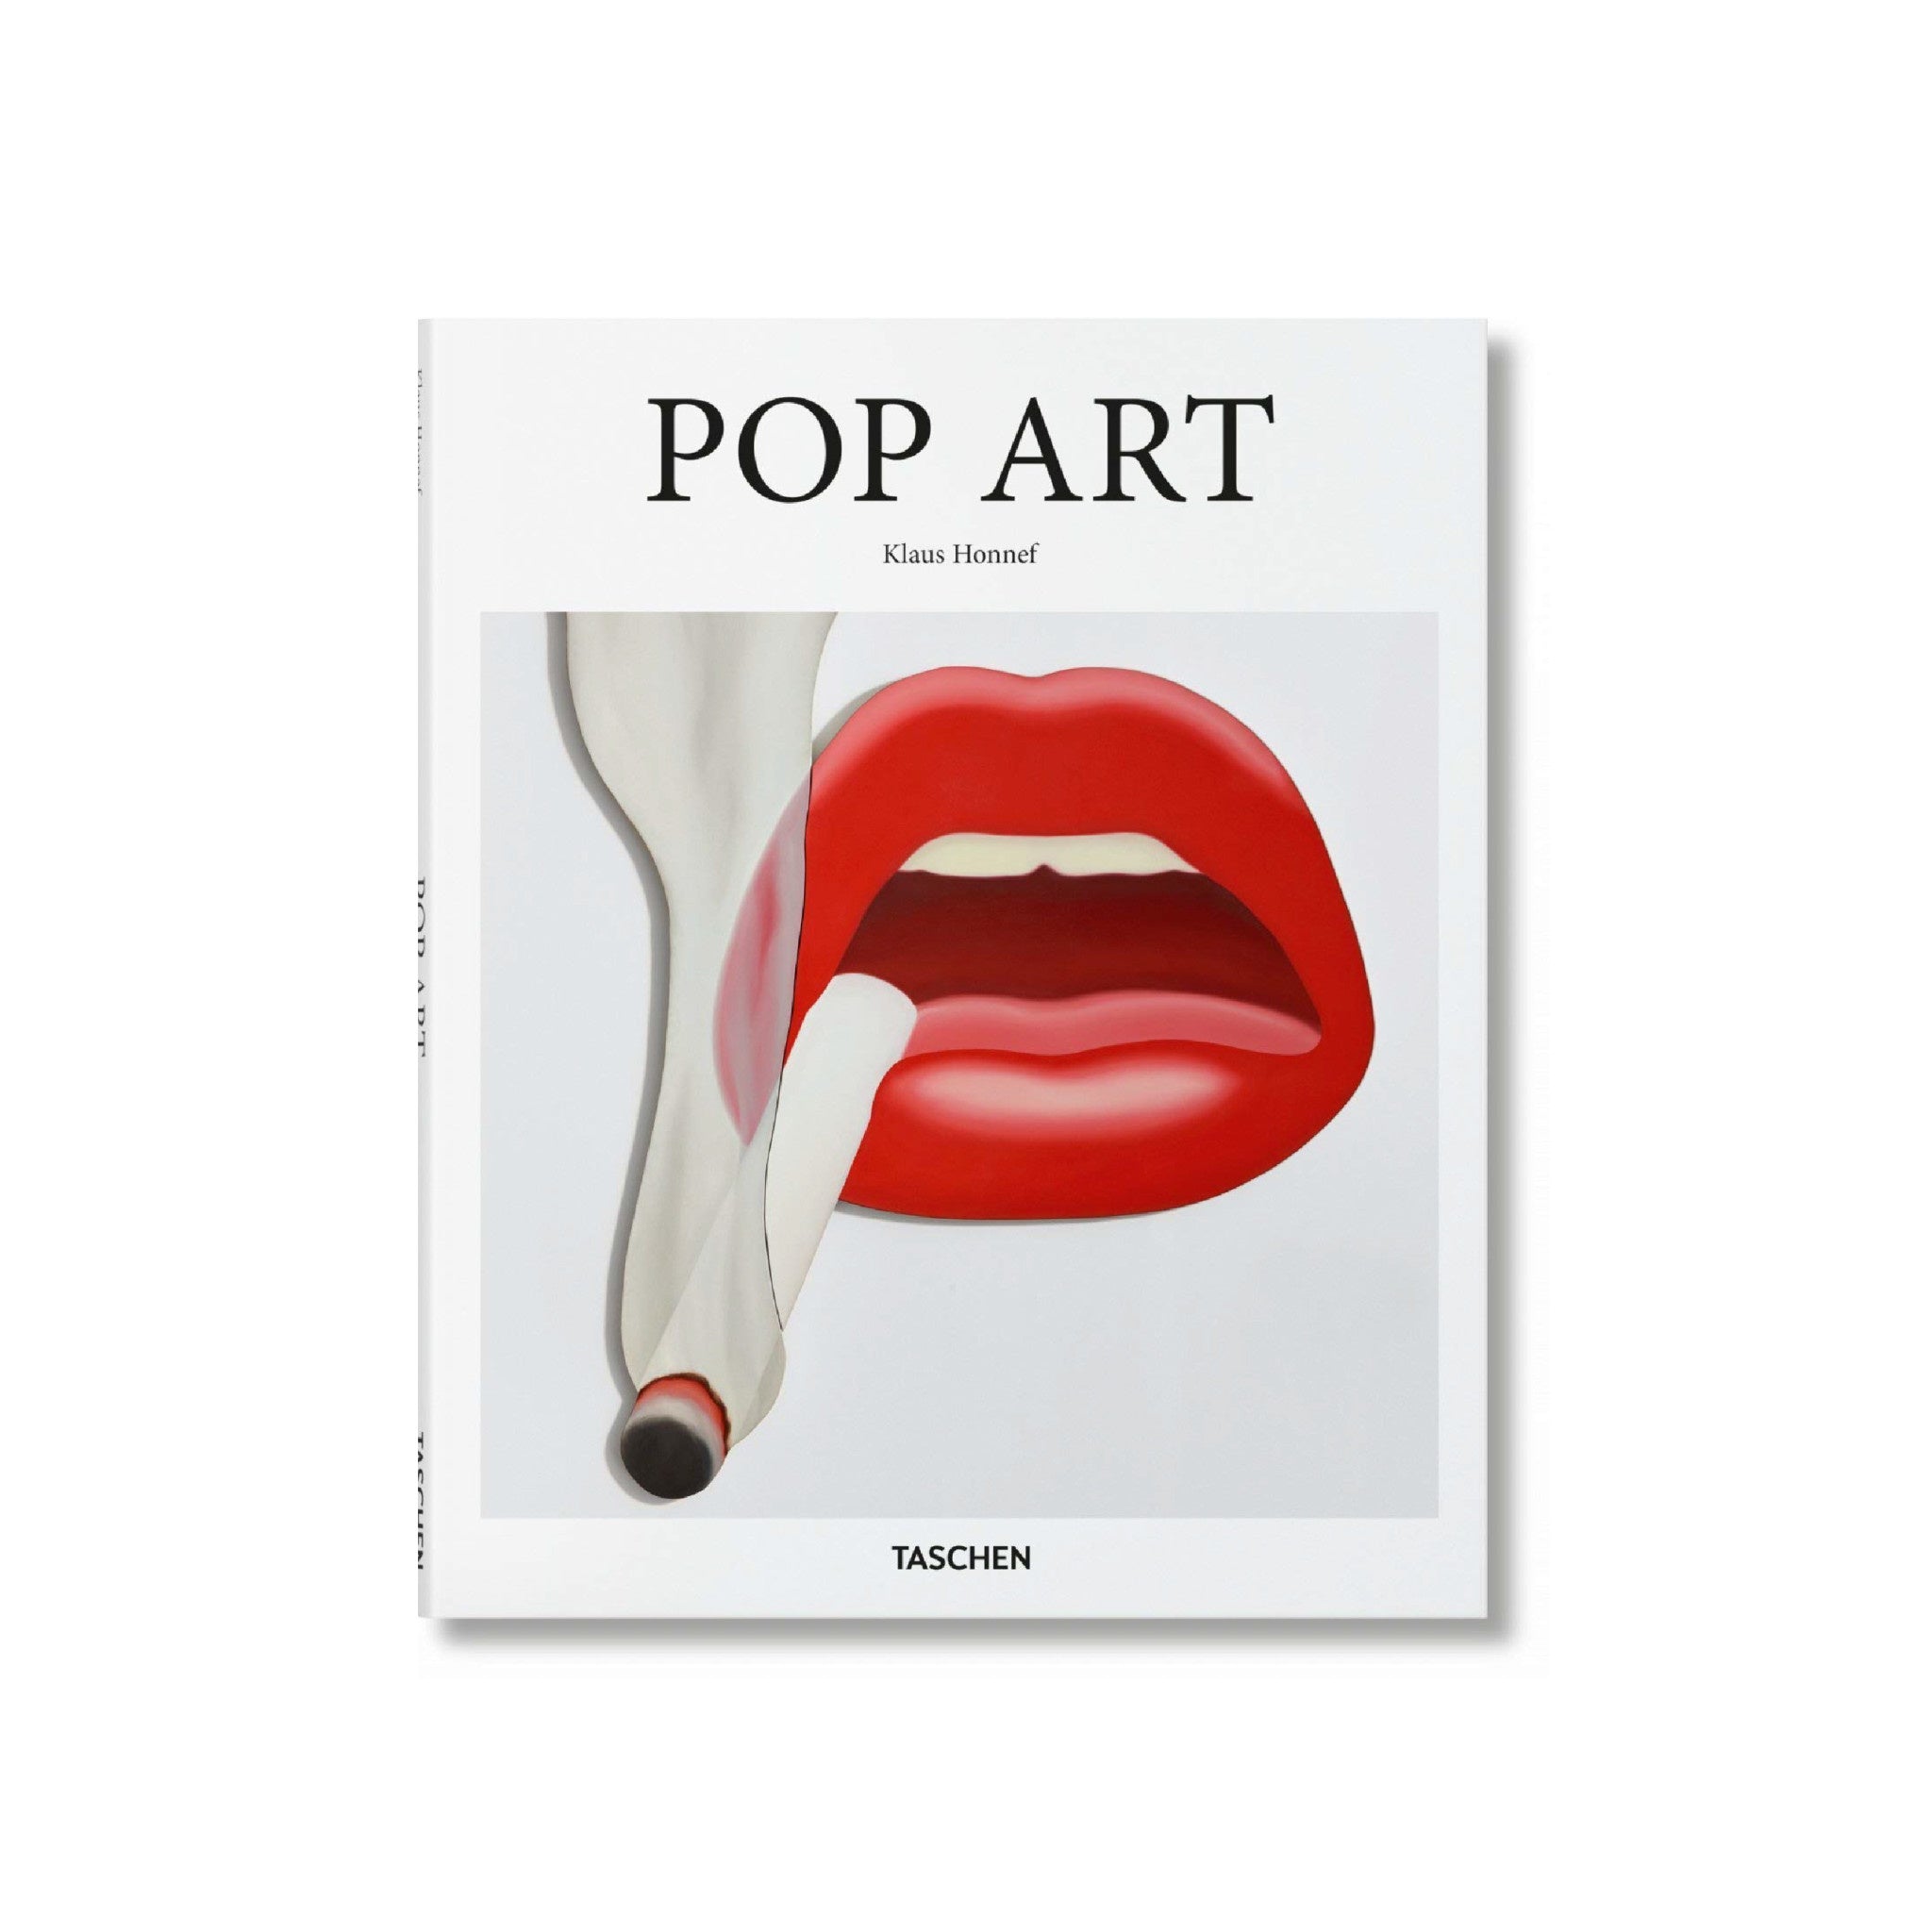 Pop Art - Taschen - Wynwood Walls Shop